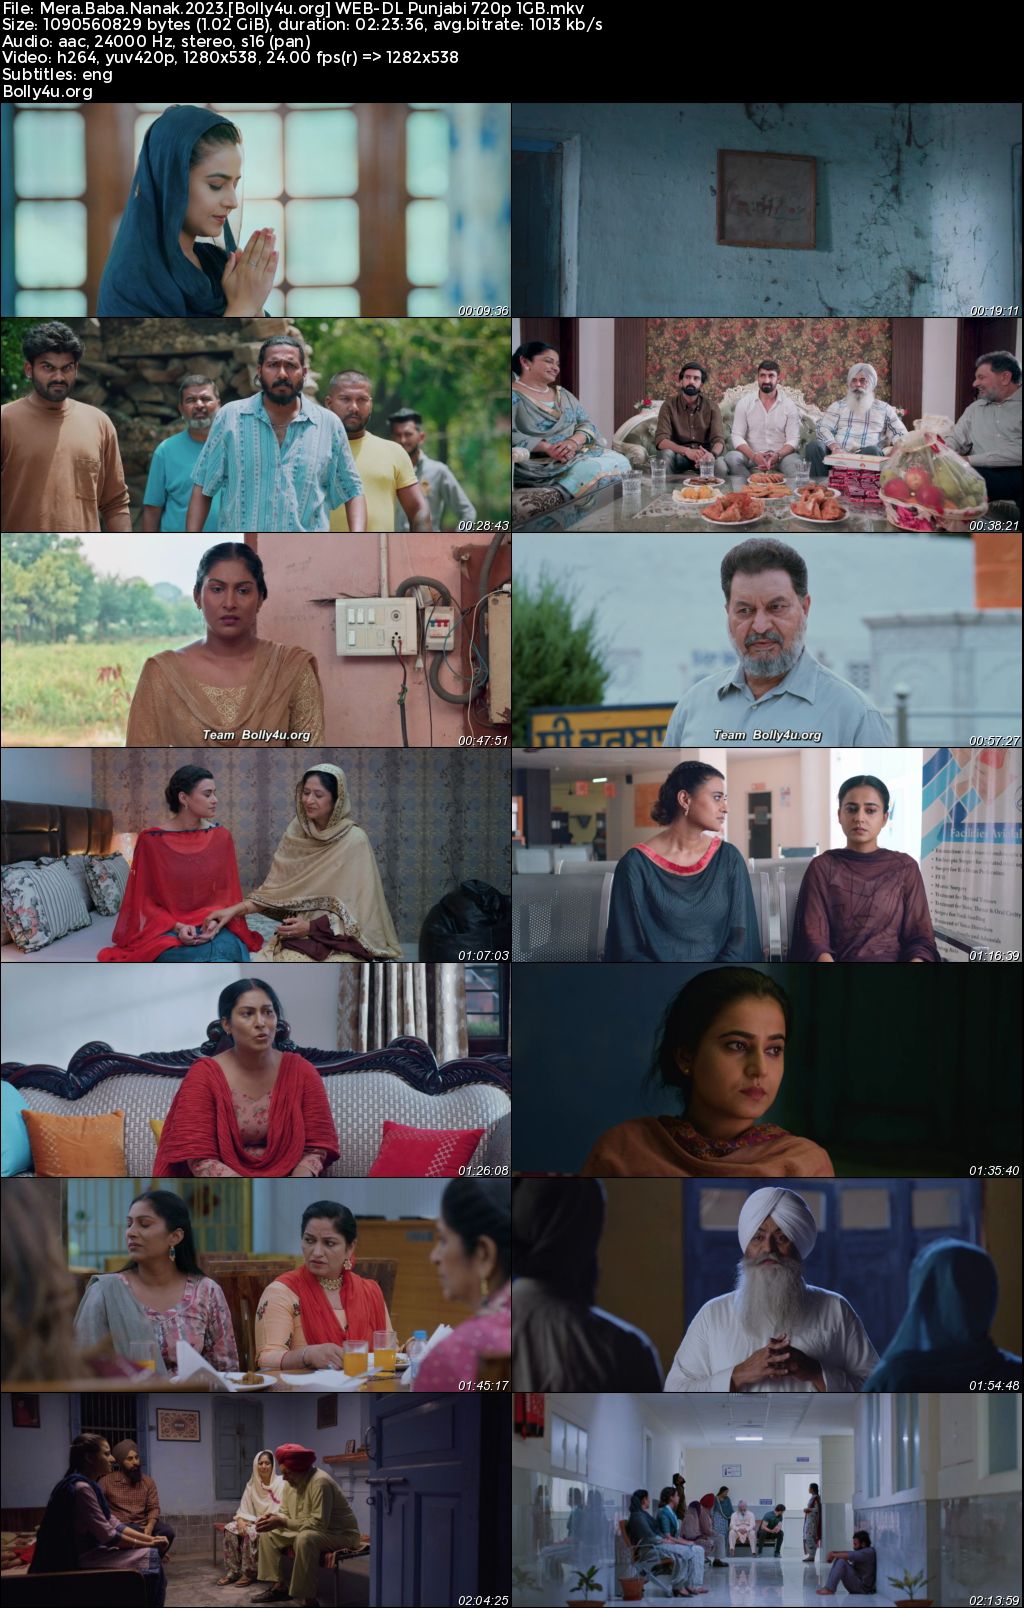 Mera Baba Nanak 2023 WEB-DL Punjabi Full Movie Download 1080p 720p 480p